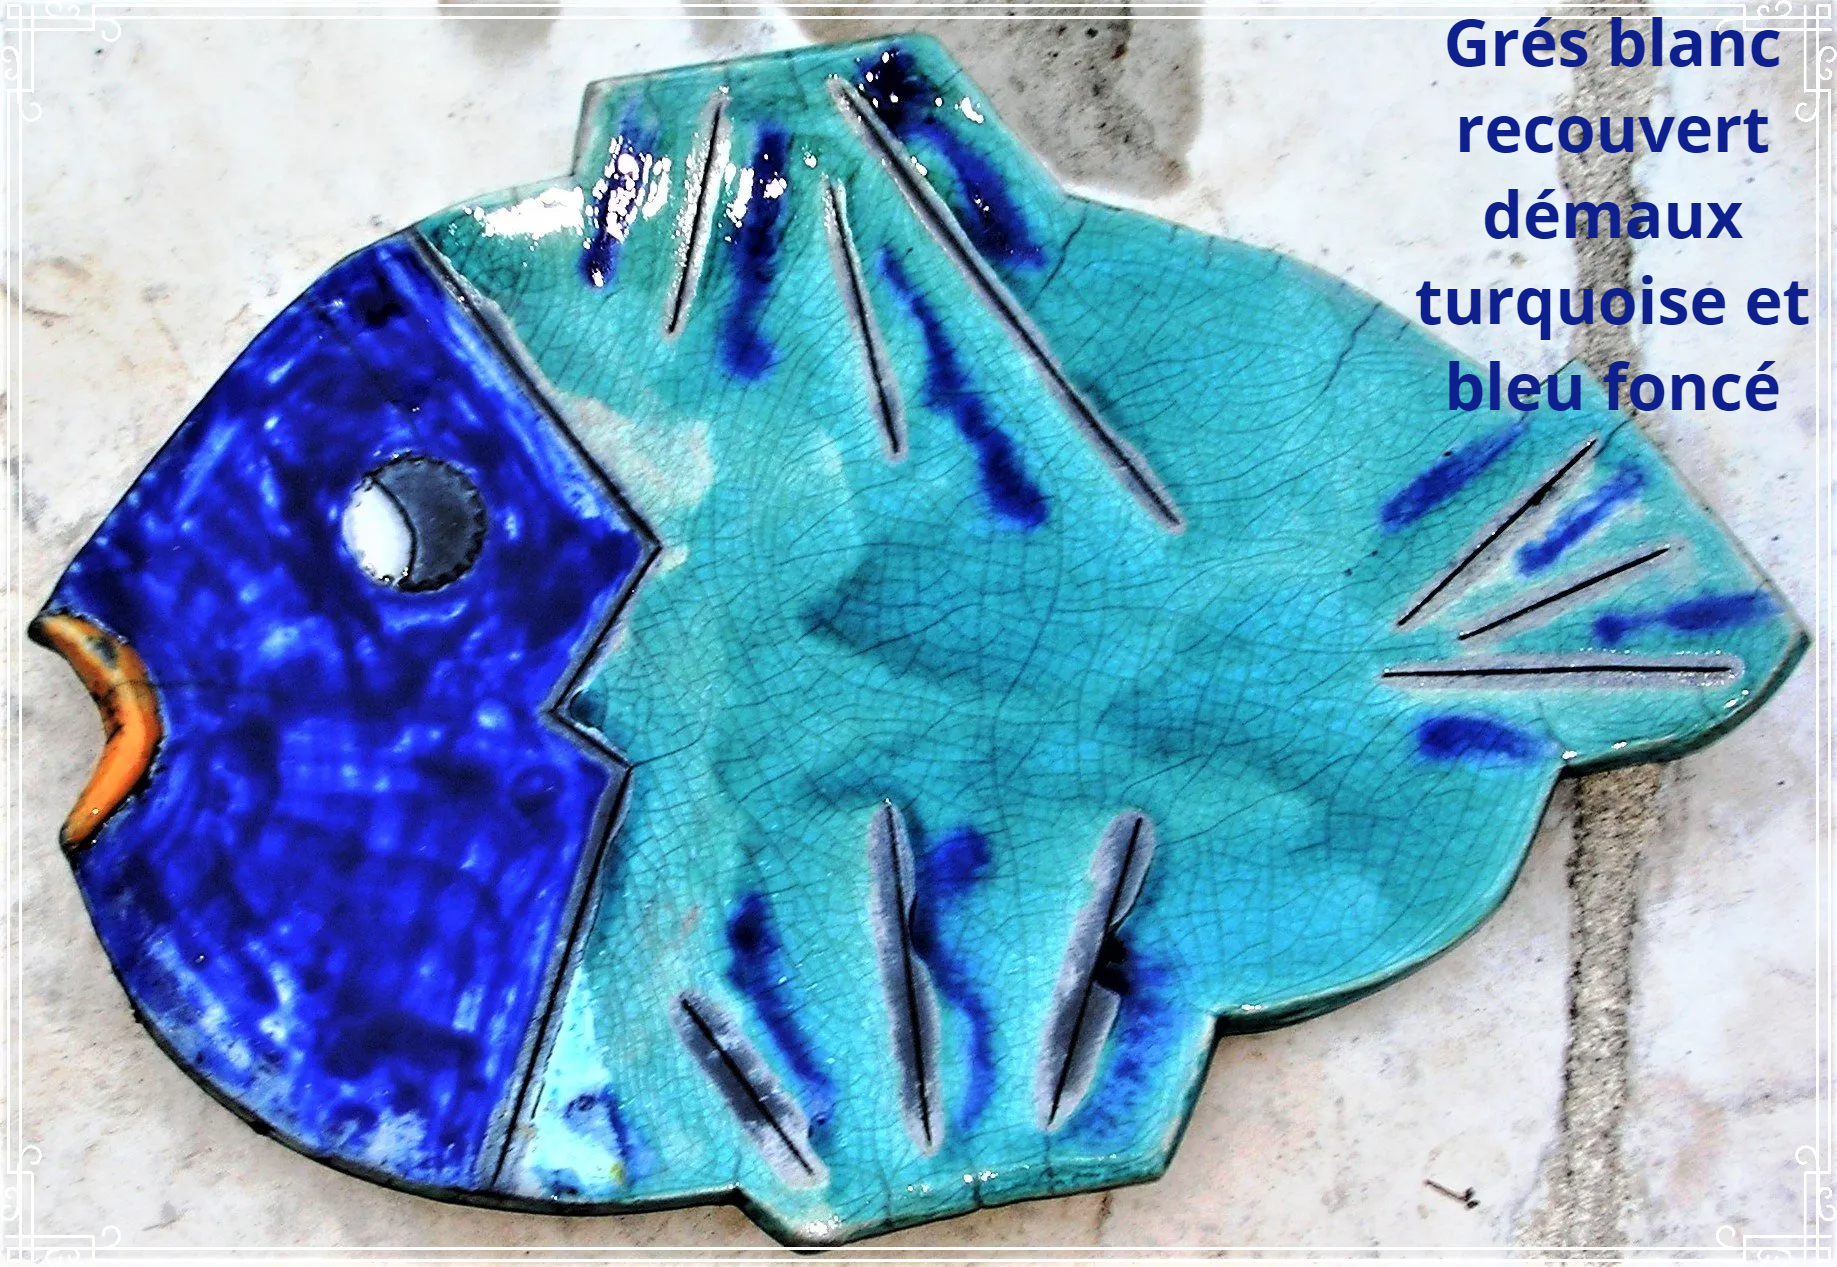 Grès blanc recouvert d'émaux turquoise et bleu intense